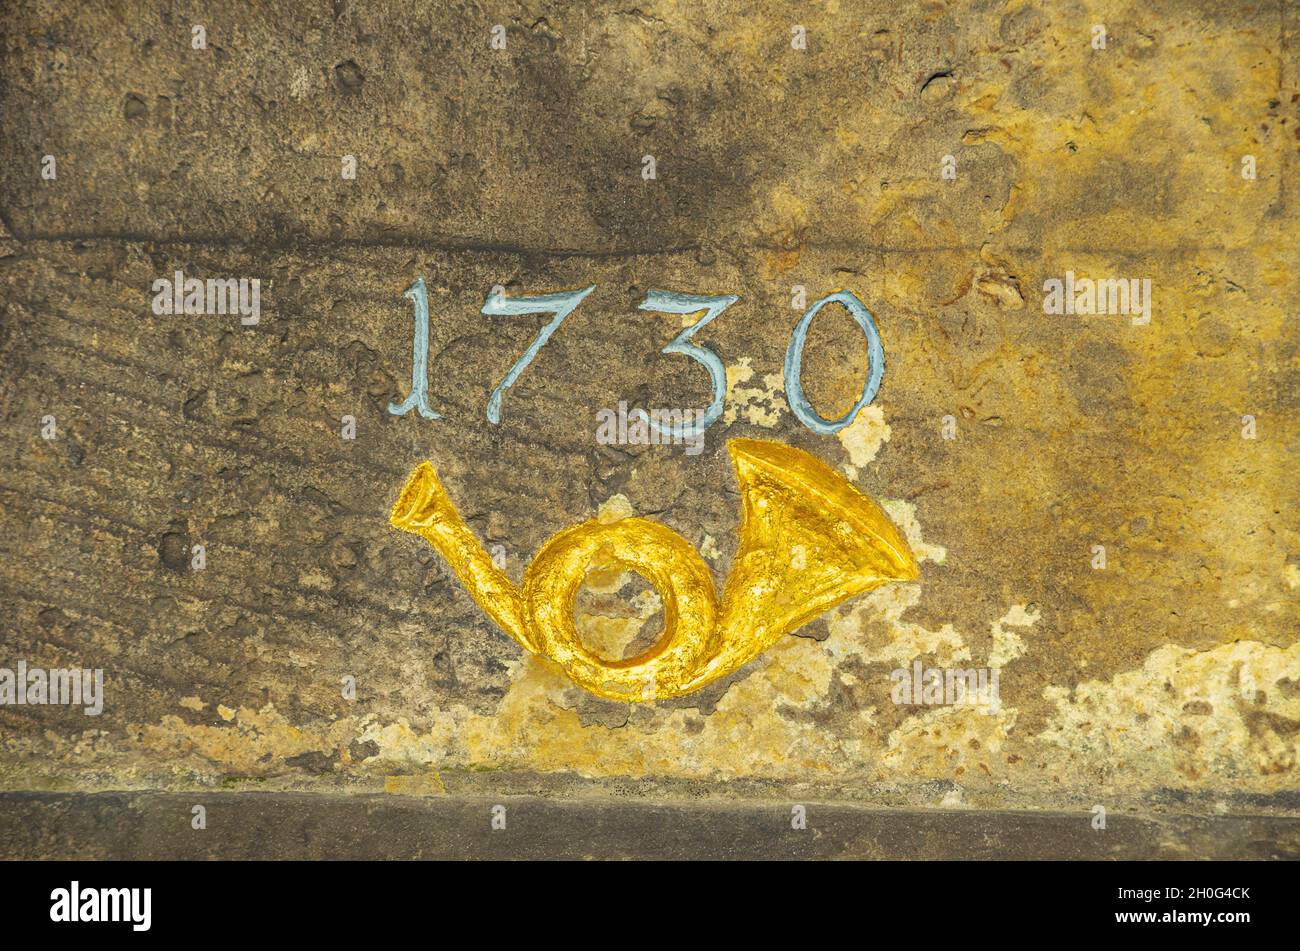 Posthorn e anno del 1730 alla storica pietra miliare post-Sassone elettorale a Moritzburg, Sassonia, Germania. Foto Stock